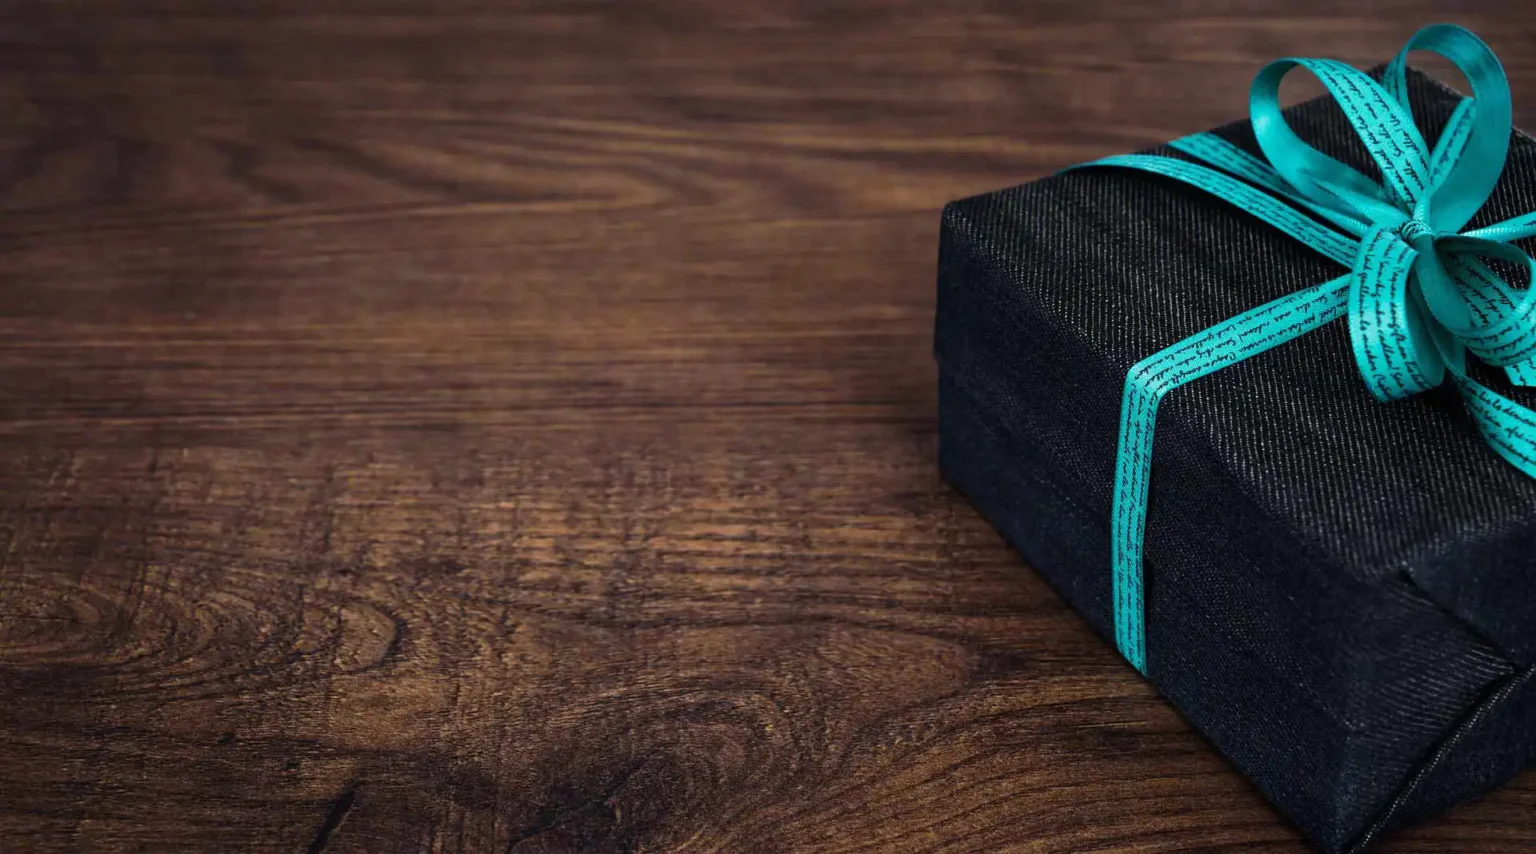 Nell'immagine si vede il primissimo piano di un pacchetto regalo con fiocco azzurro, poggiato su un tavolo di legno.